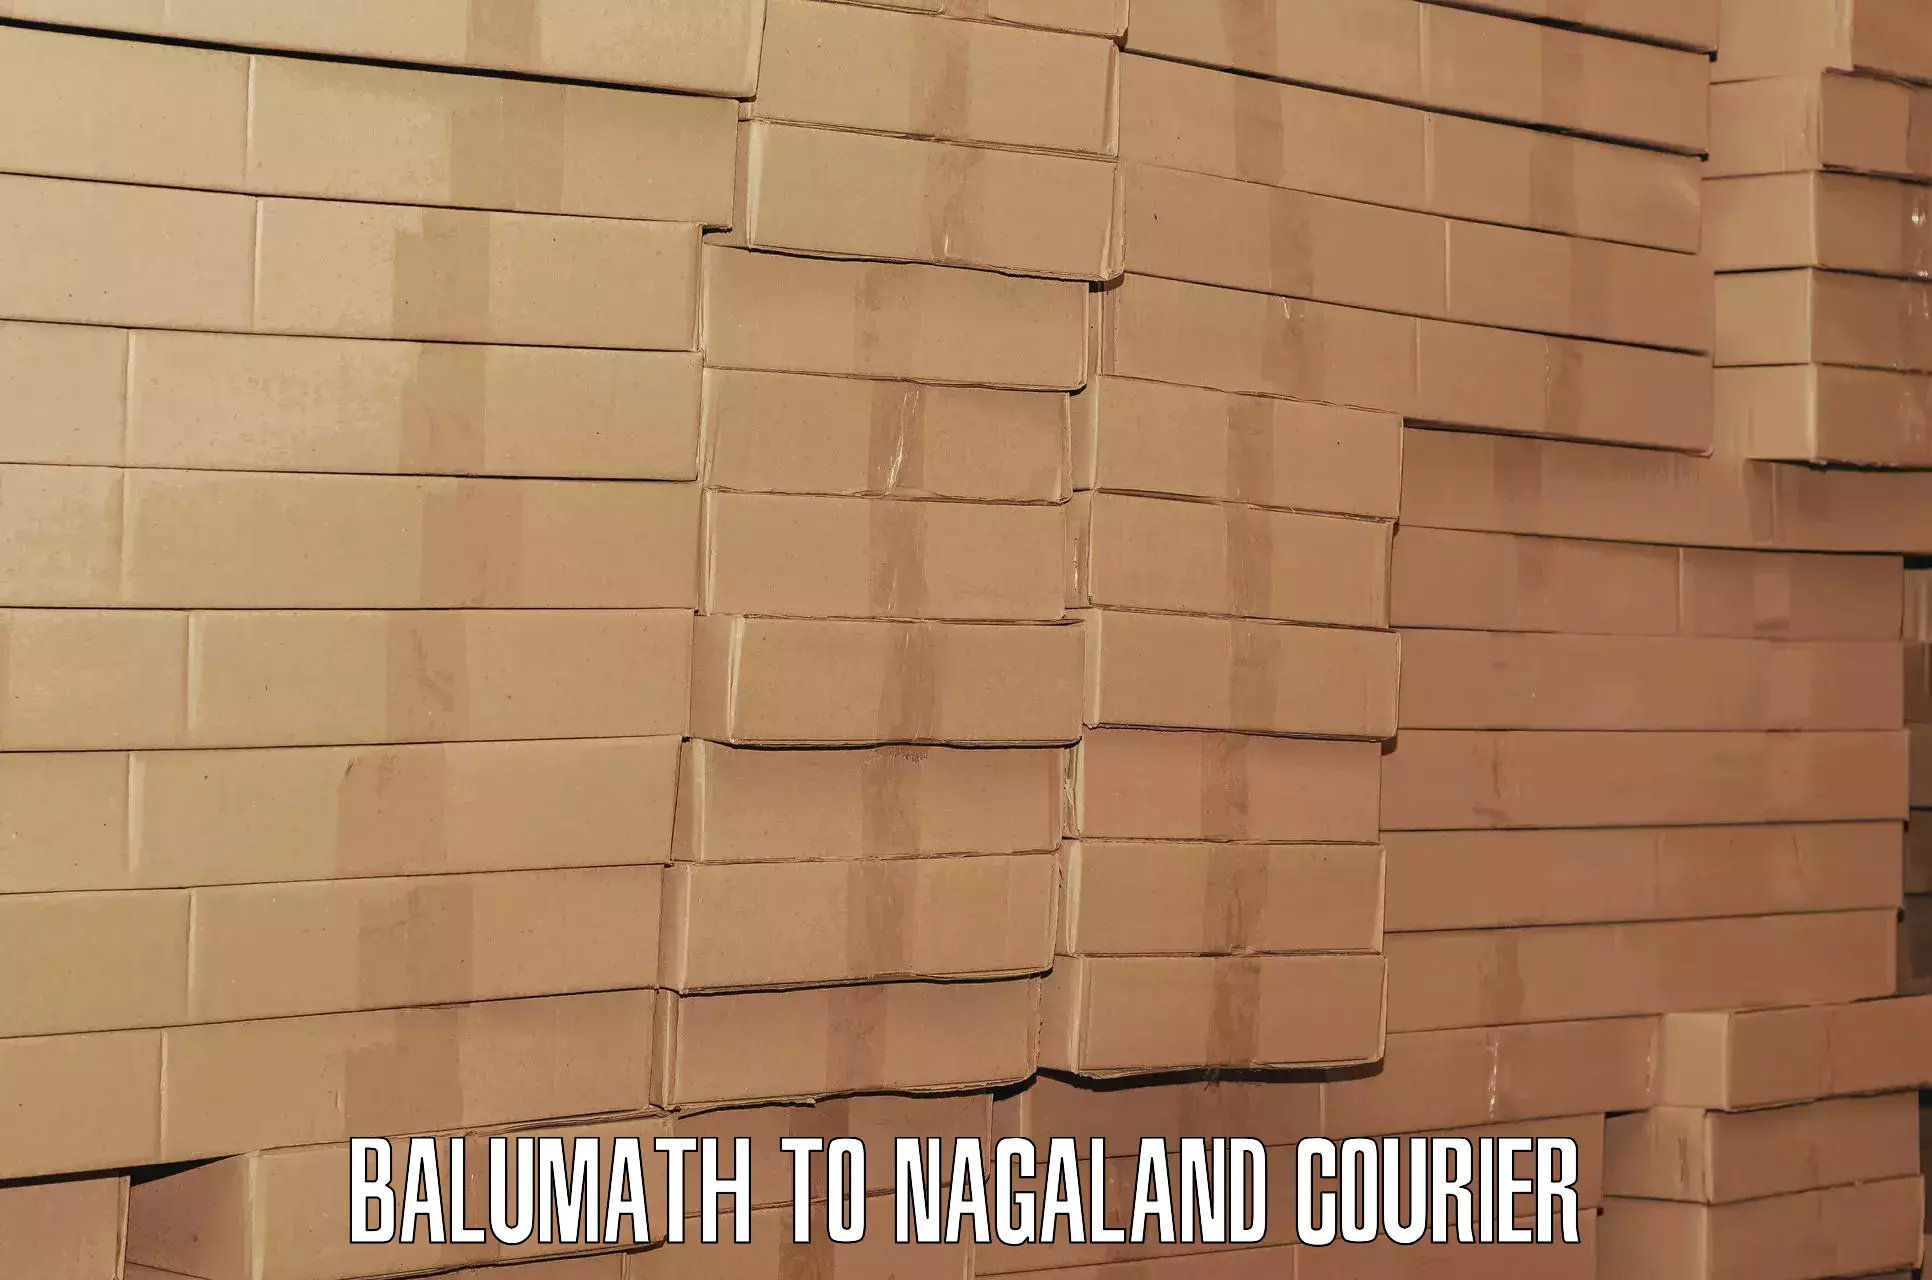 Urgent luggage shipment Balumath to Nagaland